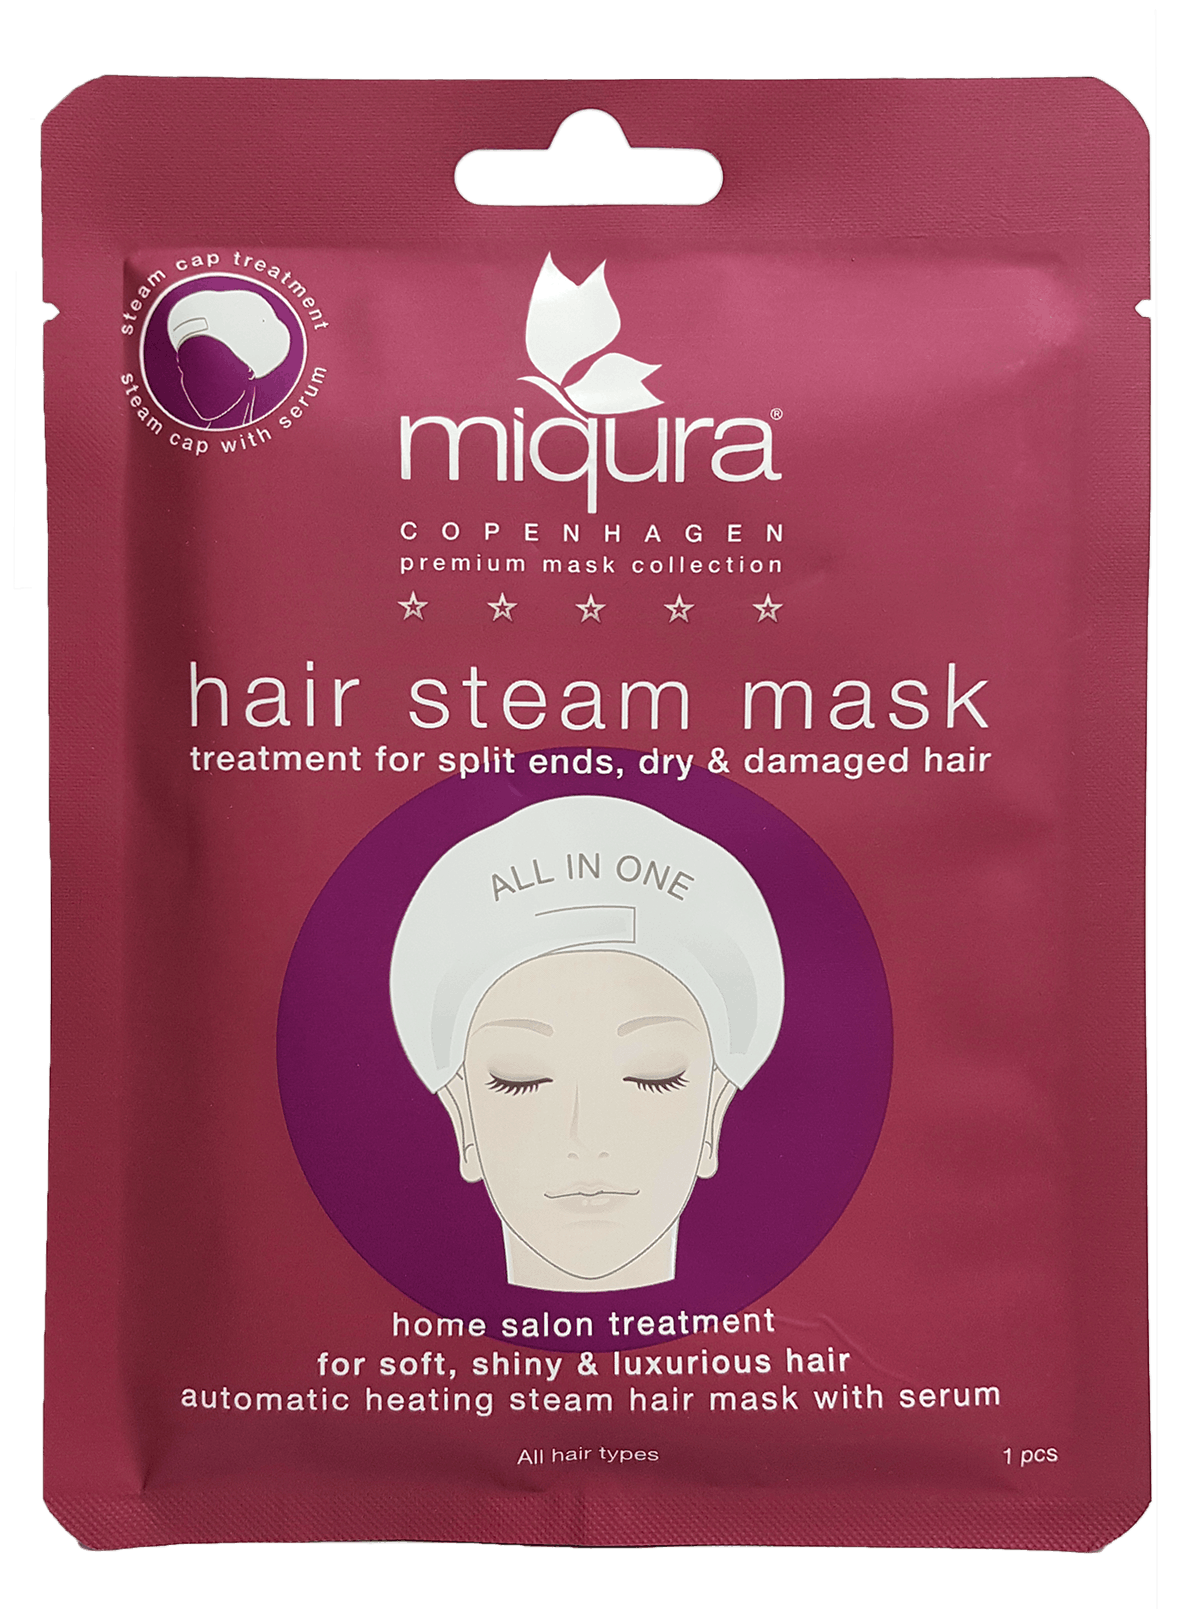 Miqura Hair Steam Mask 1 pcs £4.45